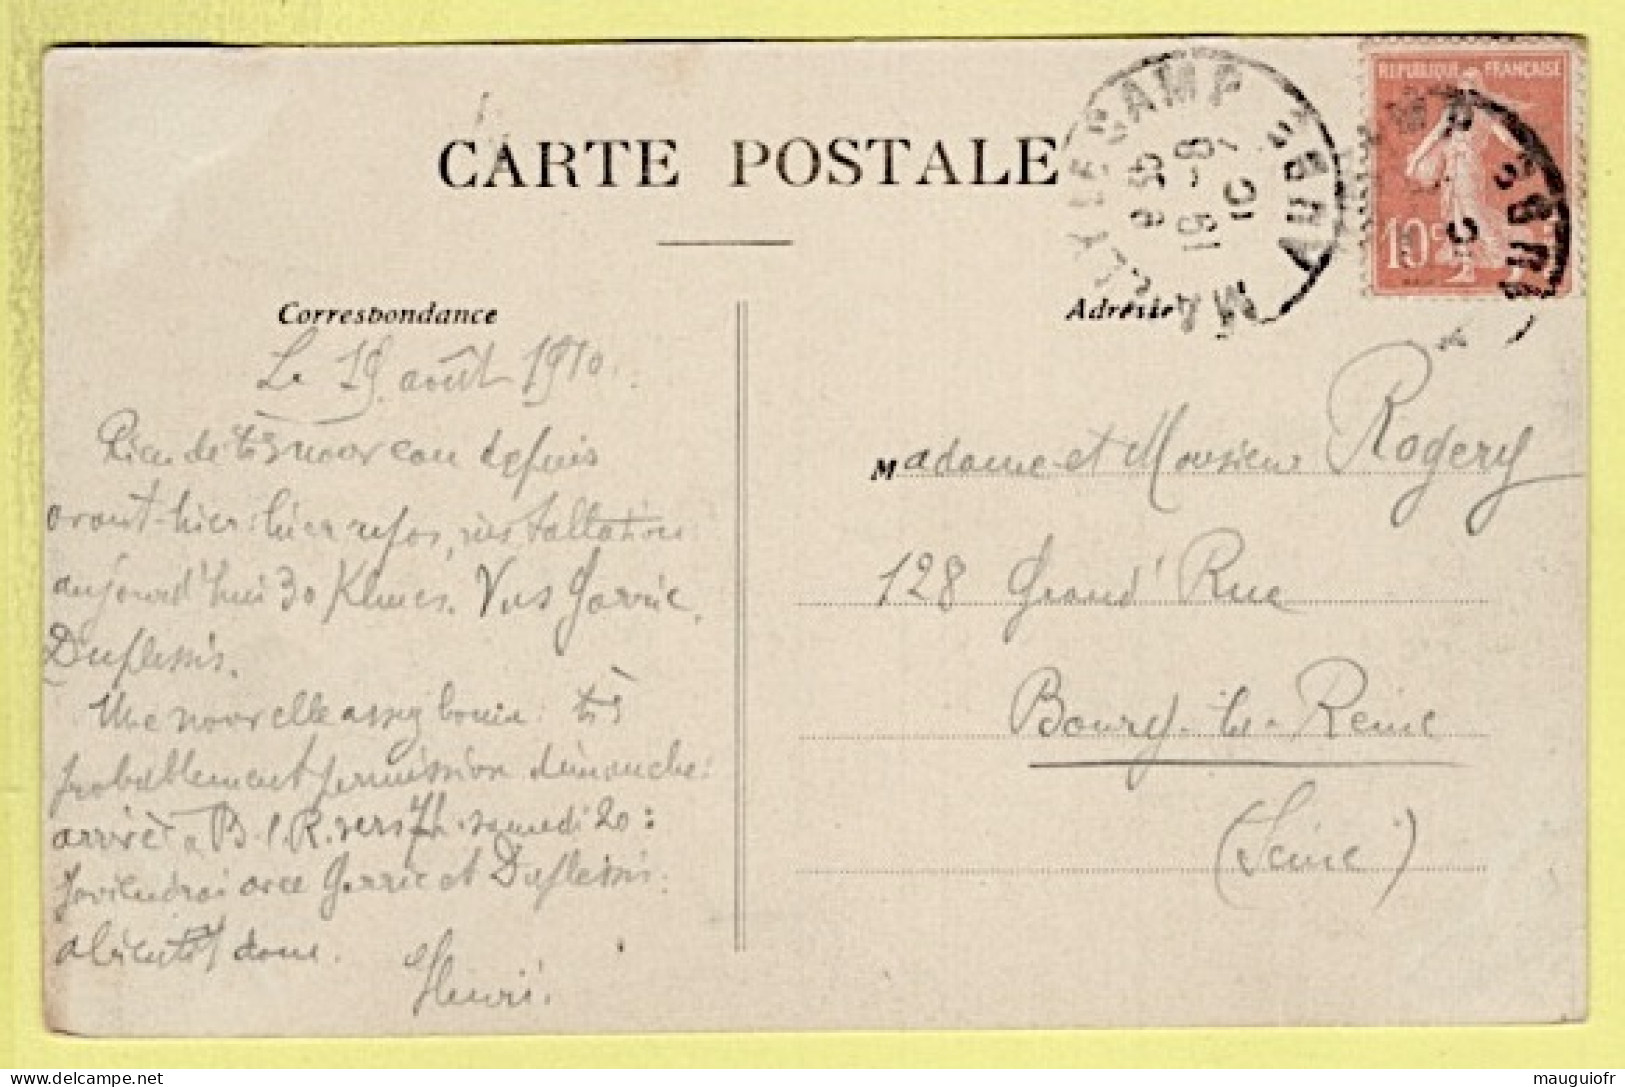 MILITARIA / CAMPS ET CASERNES / 10 MAILLY-LE-CAMP / CAMP DE MAILLY / VUE D'ENSEMBLE / ANIMÉE / 1910 - Casernes